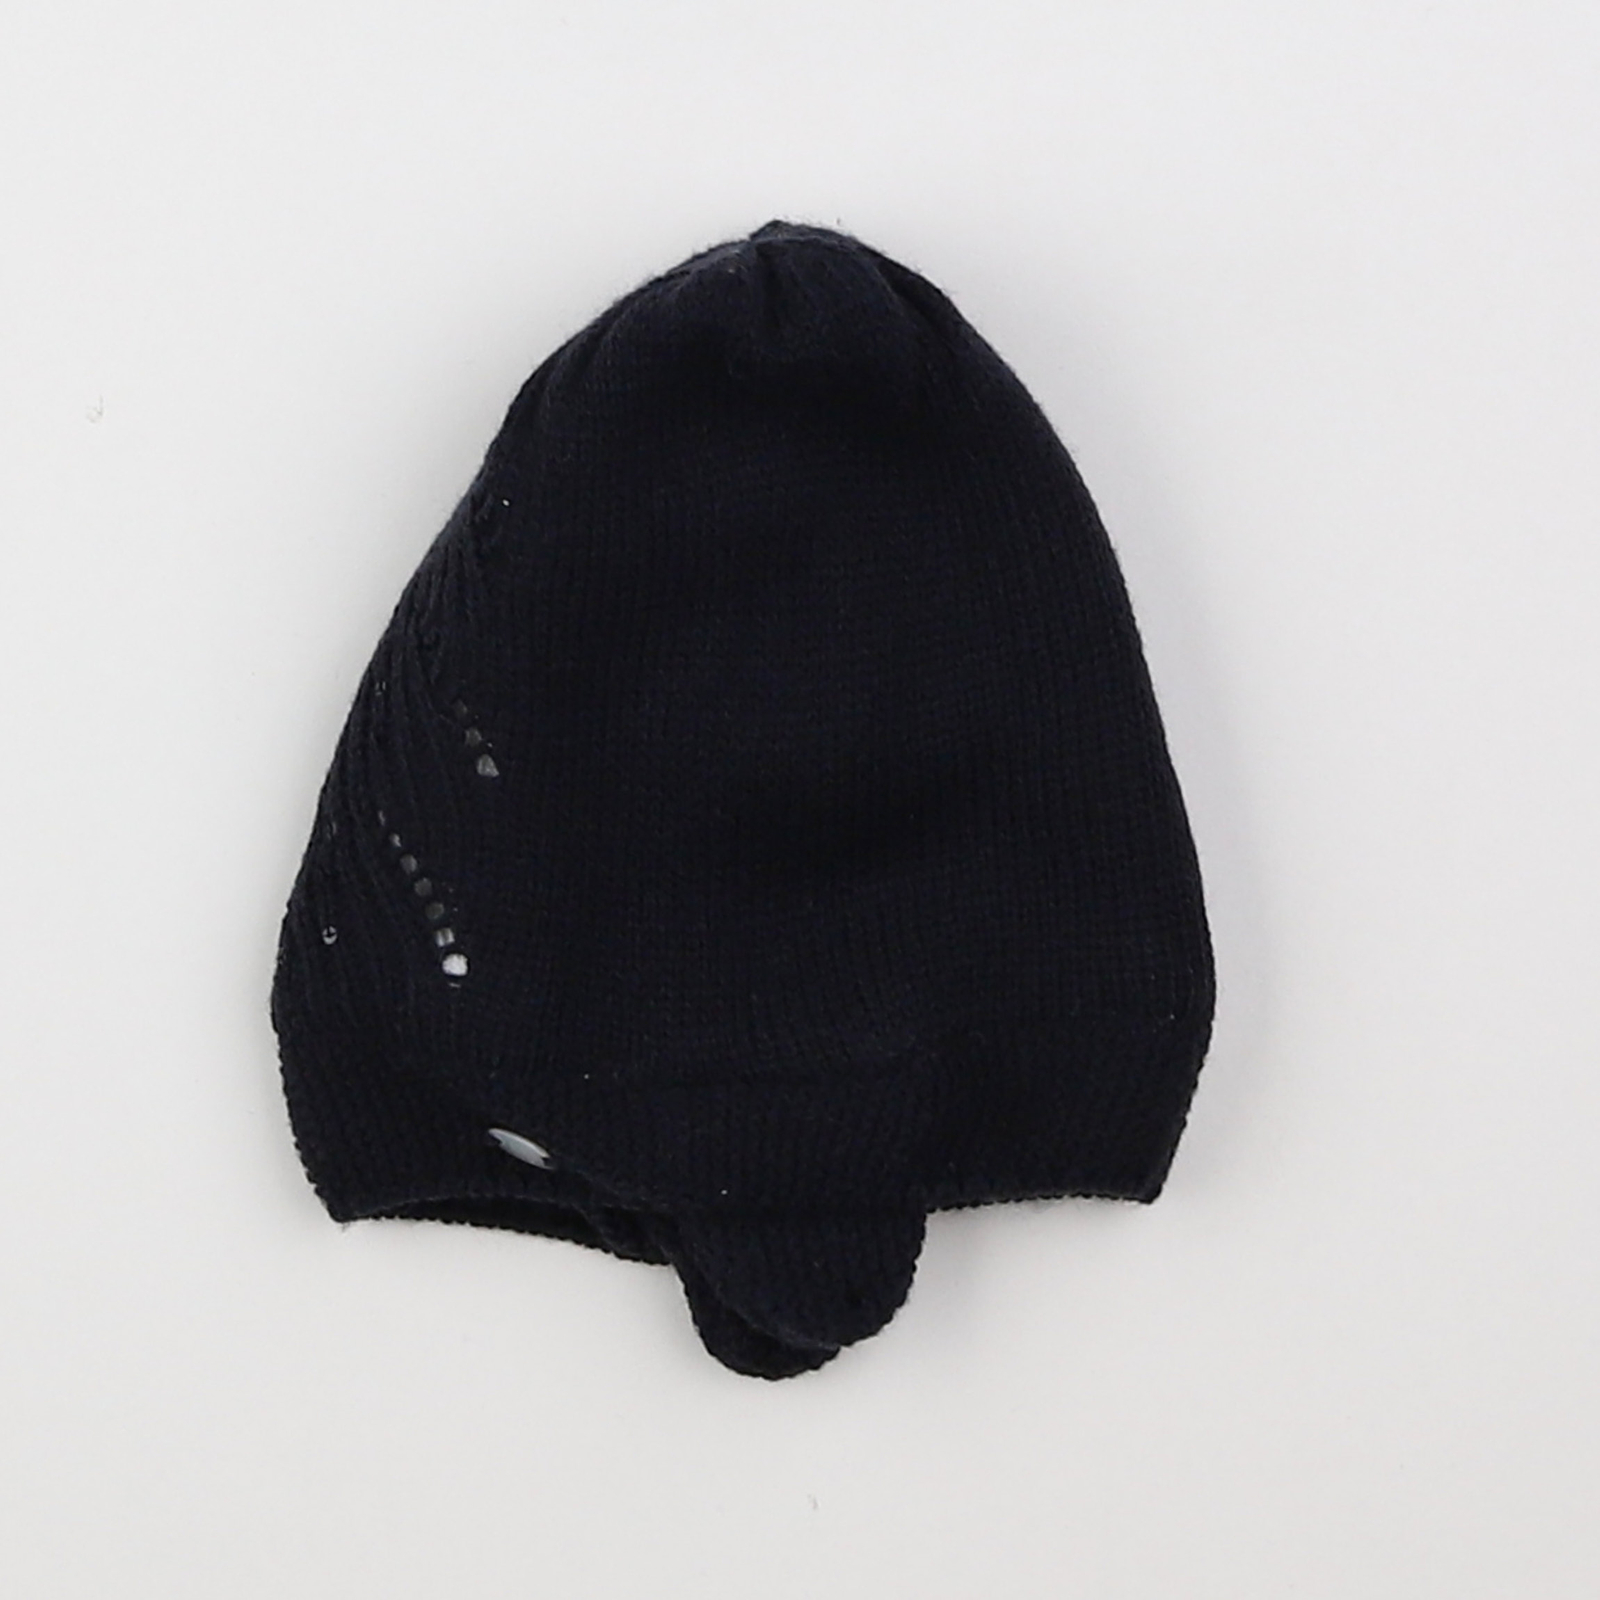 Bonnet noir, blanc - IKKS - 6/18 mois - vêtements enfant d'occasion